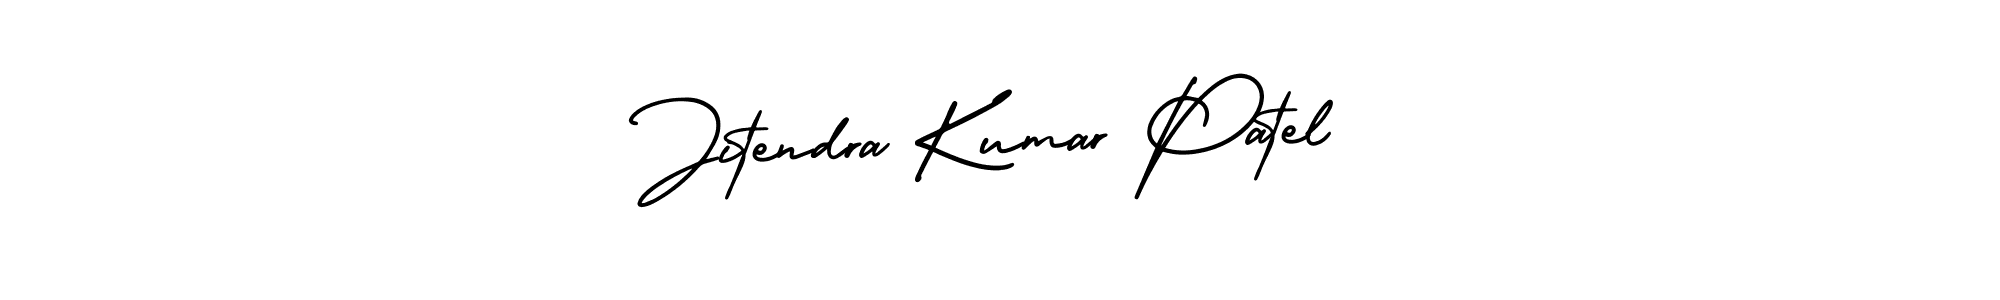 Jitendra Kumar Patel stylish signature style. Best Handwritten Sign (AmerikaSignatureDemo-Regular) for my name. Handwritten Signature Collection Ideas for my name Jitendra Kumar Patel. Jitendra Kumar Patel signature style 3 images and pictures png